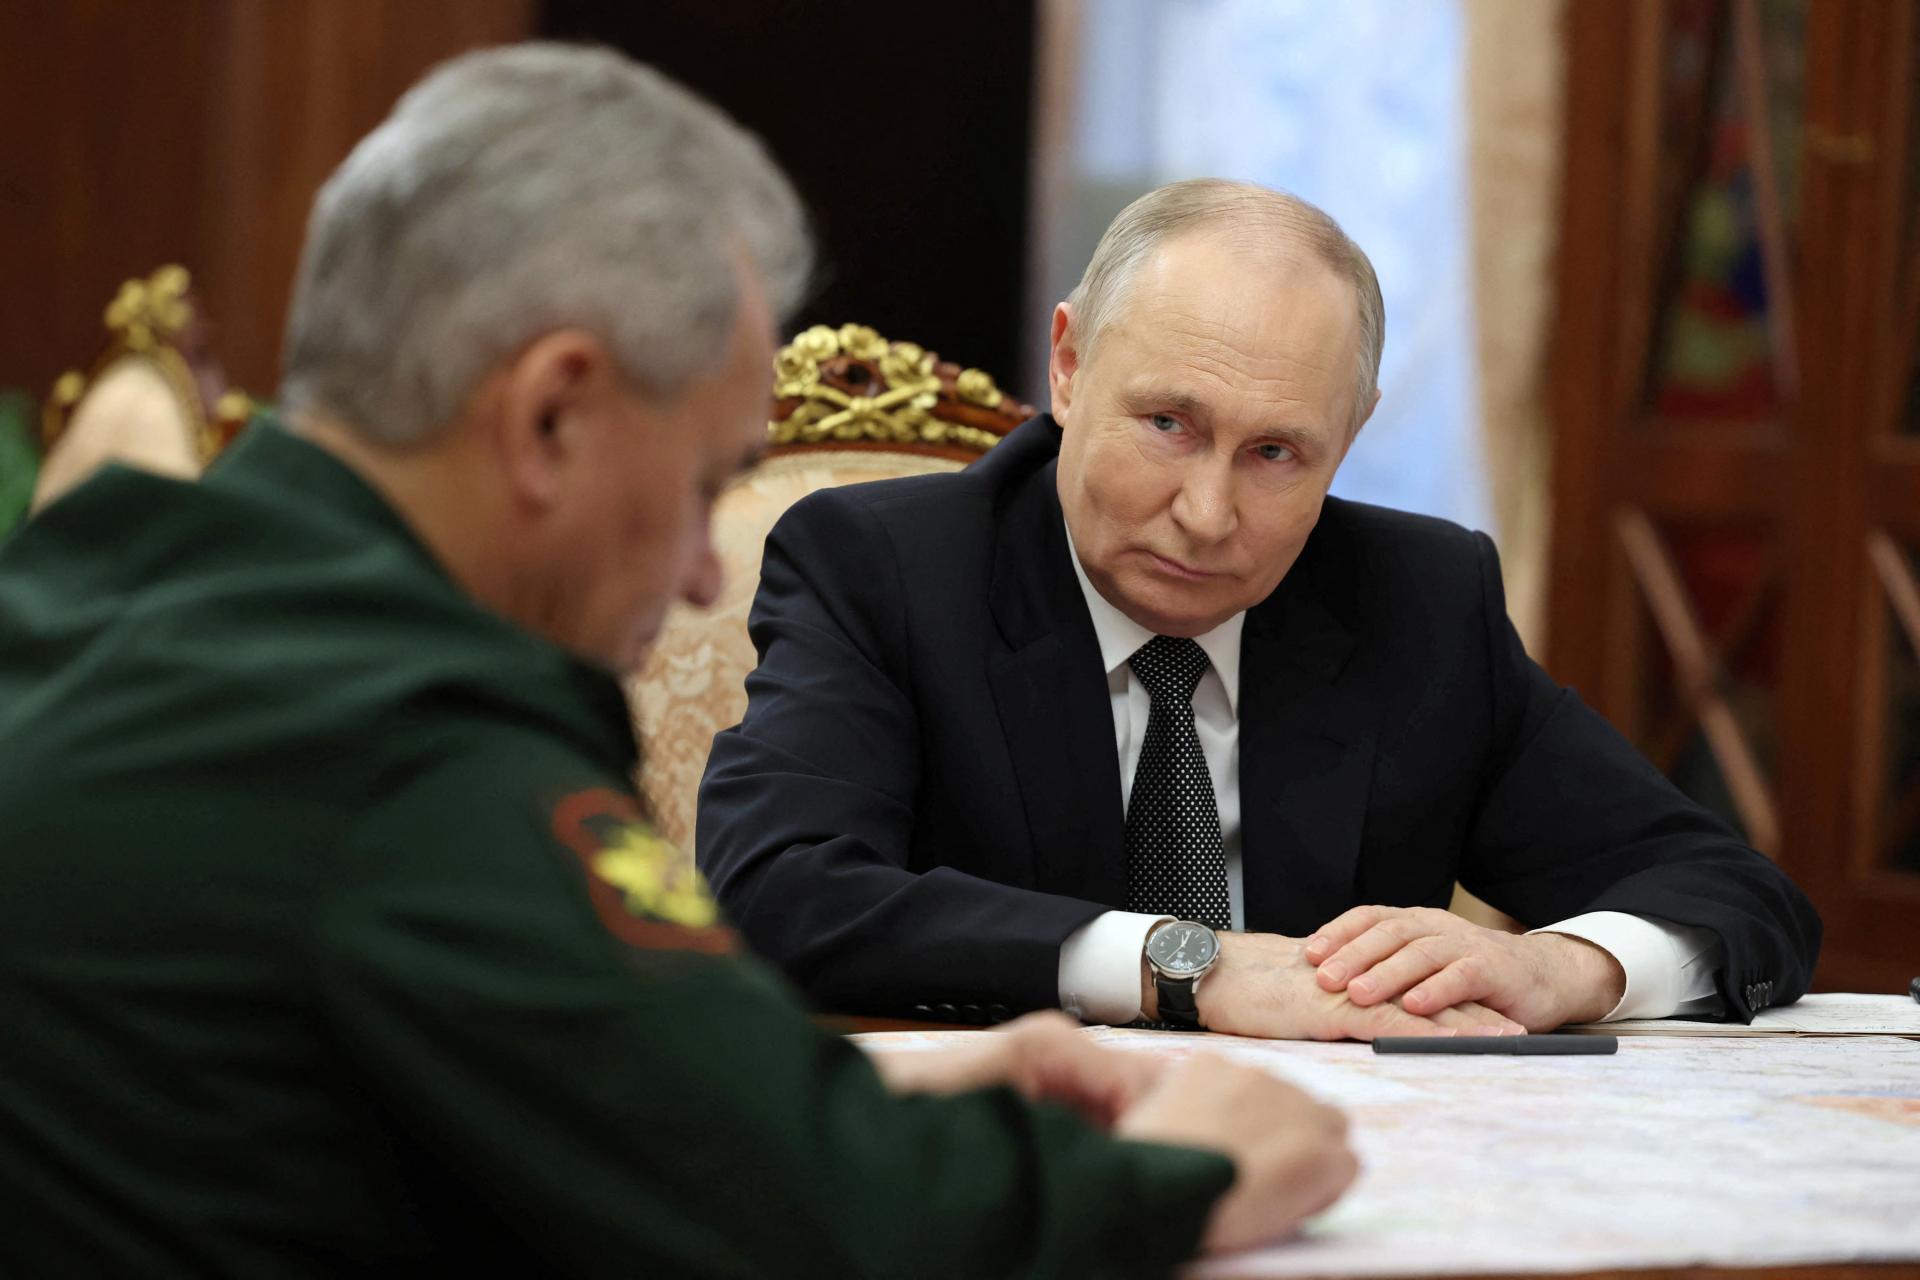 Šojgu priniesol Putinovi dobré správy. Ruské jednotky dobyli späť Krynky na brehu Dnepra, oznámil prezidentovi